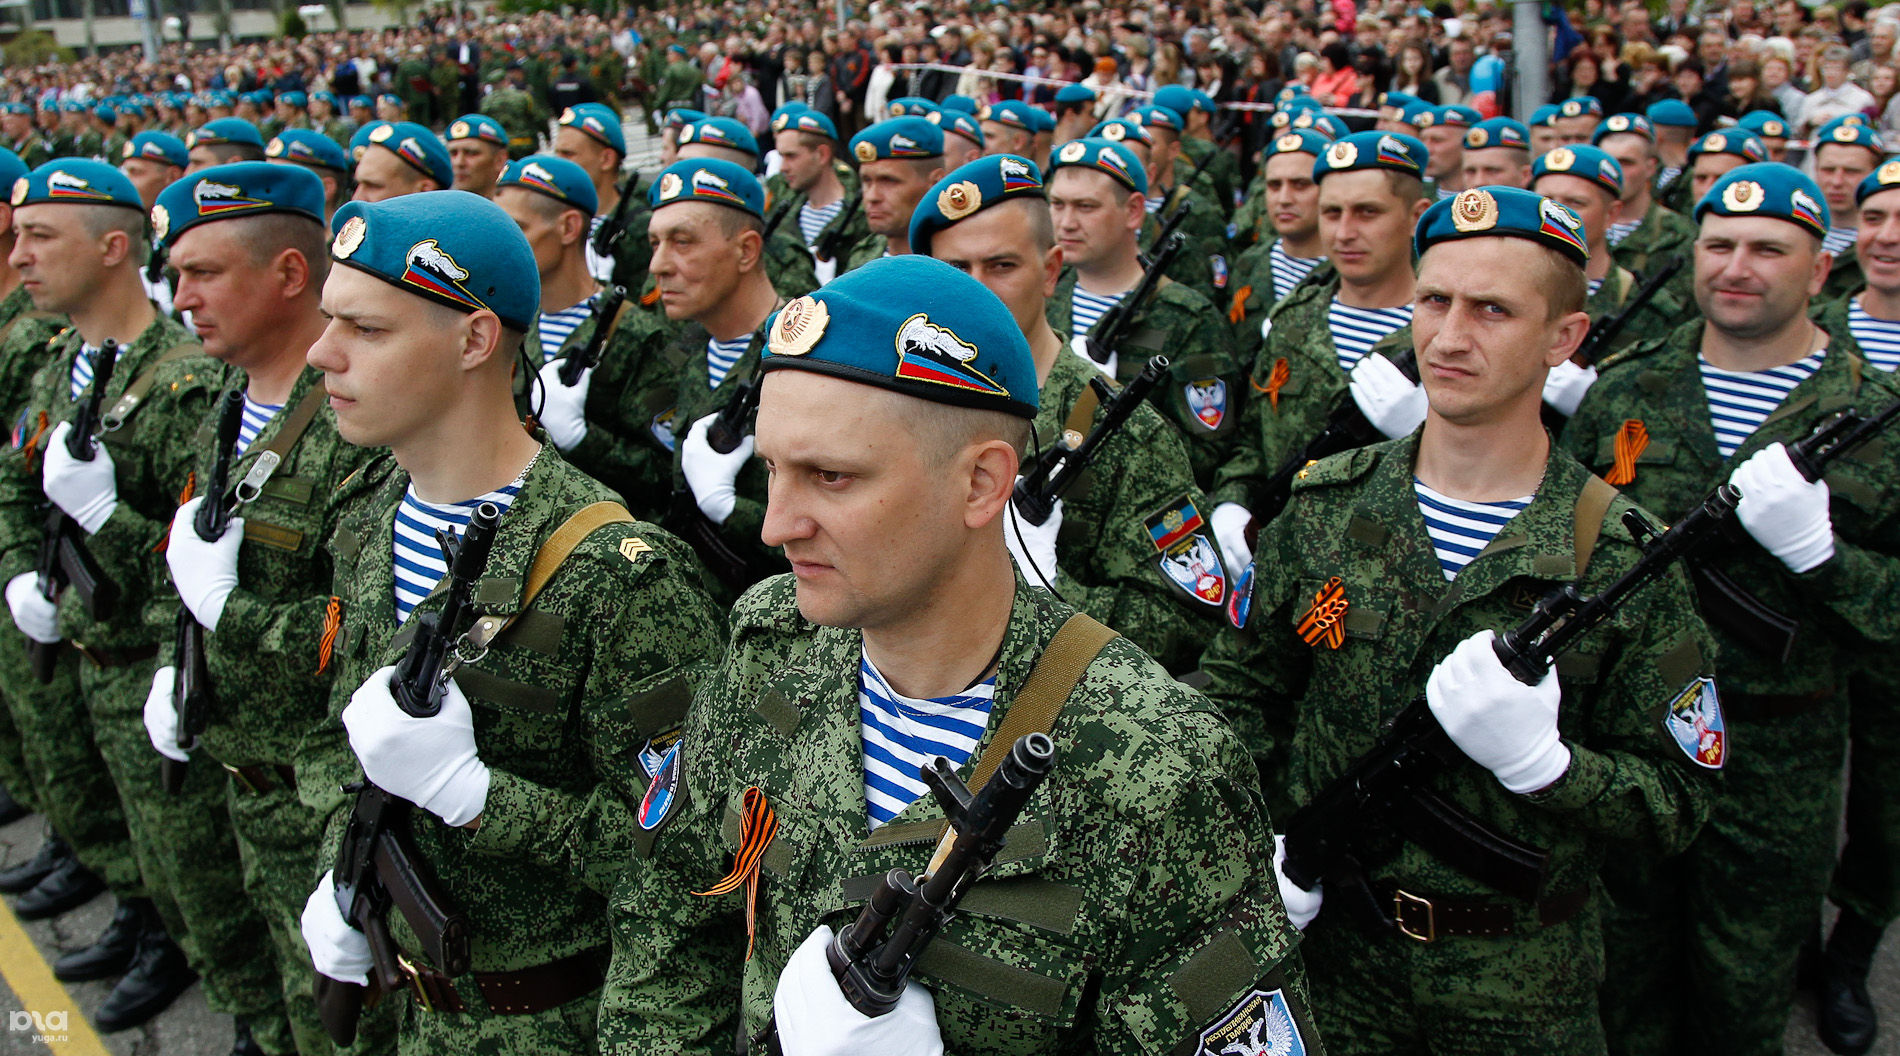 Несмотря на позицию Украины, парад 9 мая в Донецке все равно будет